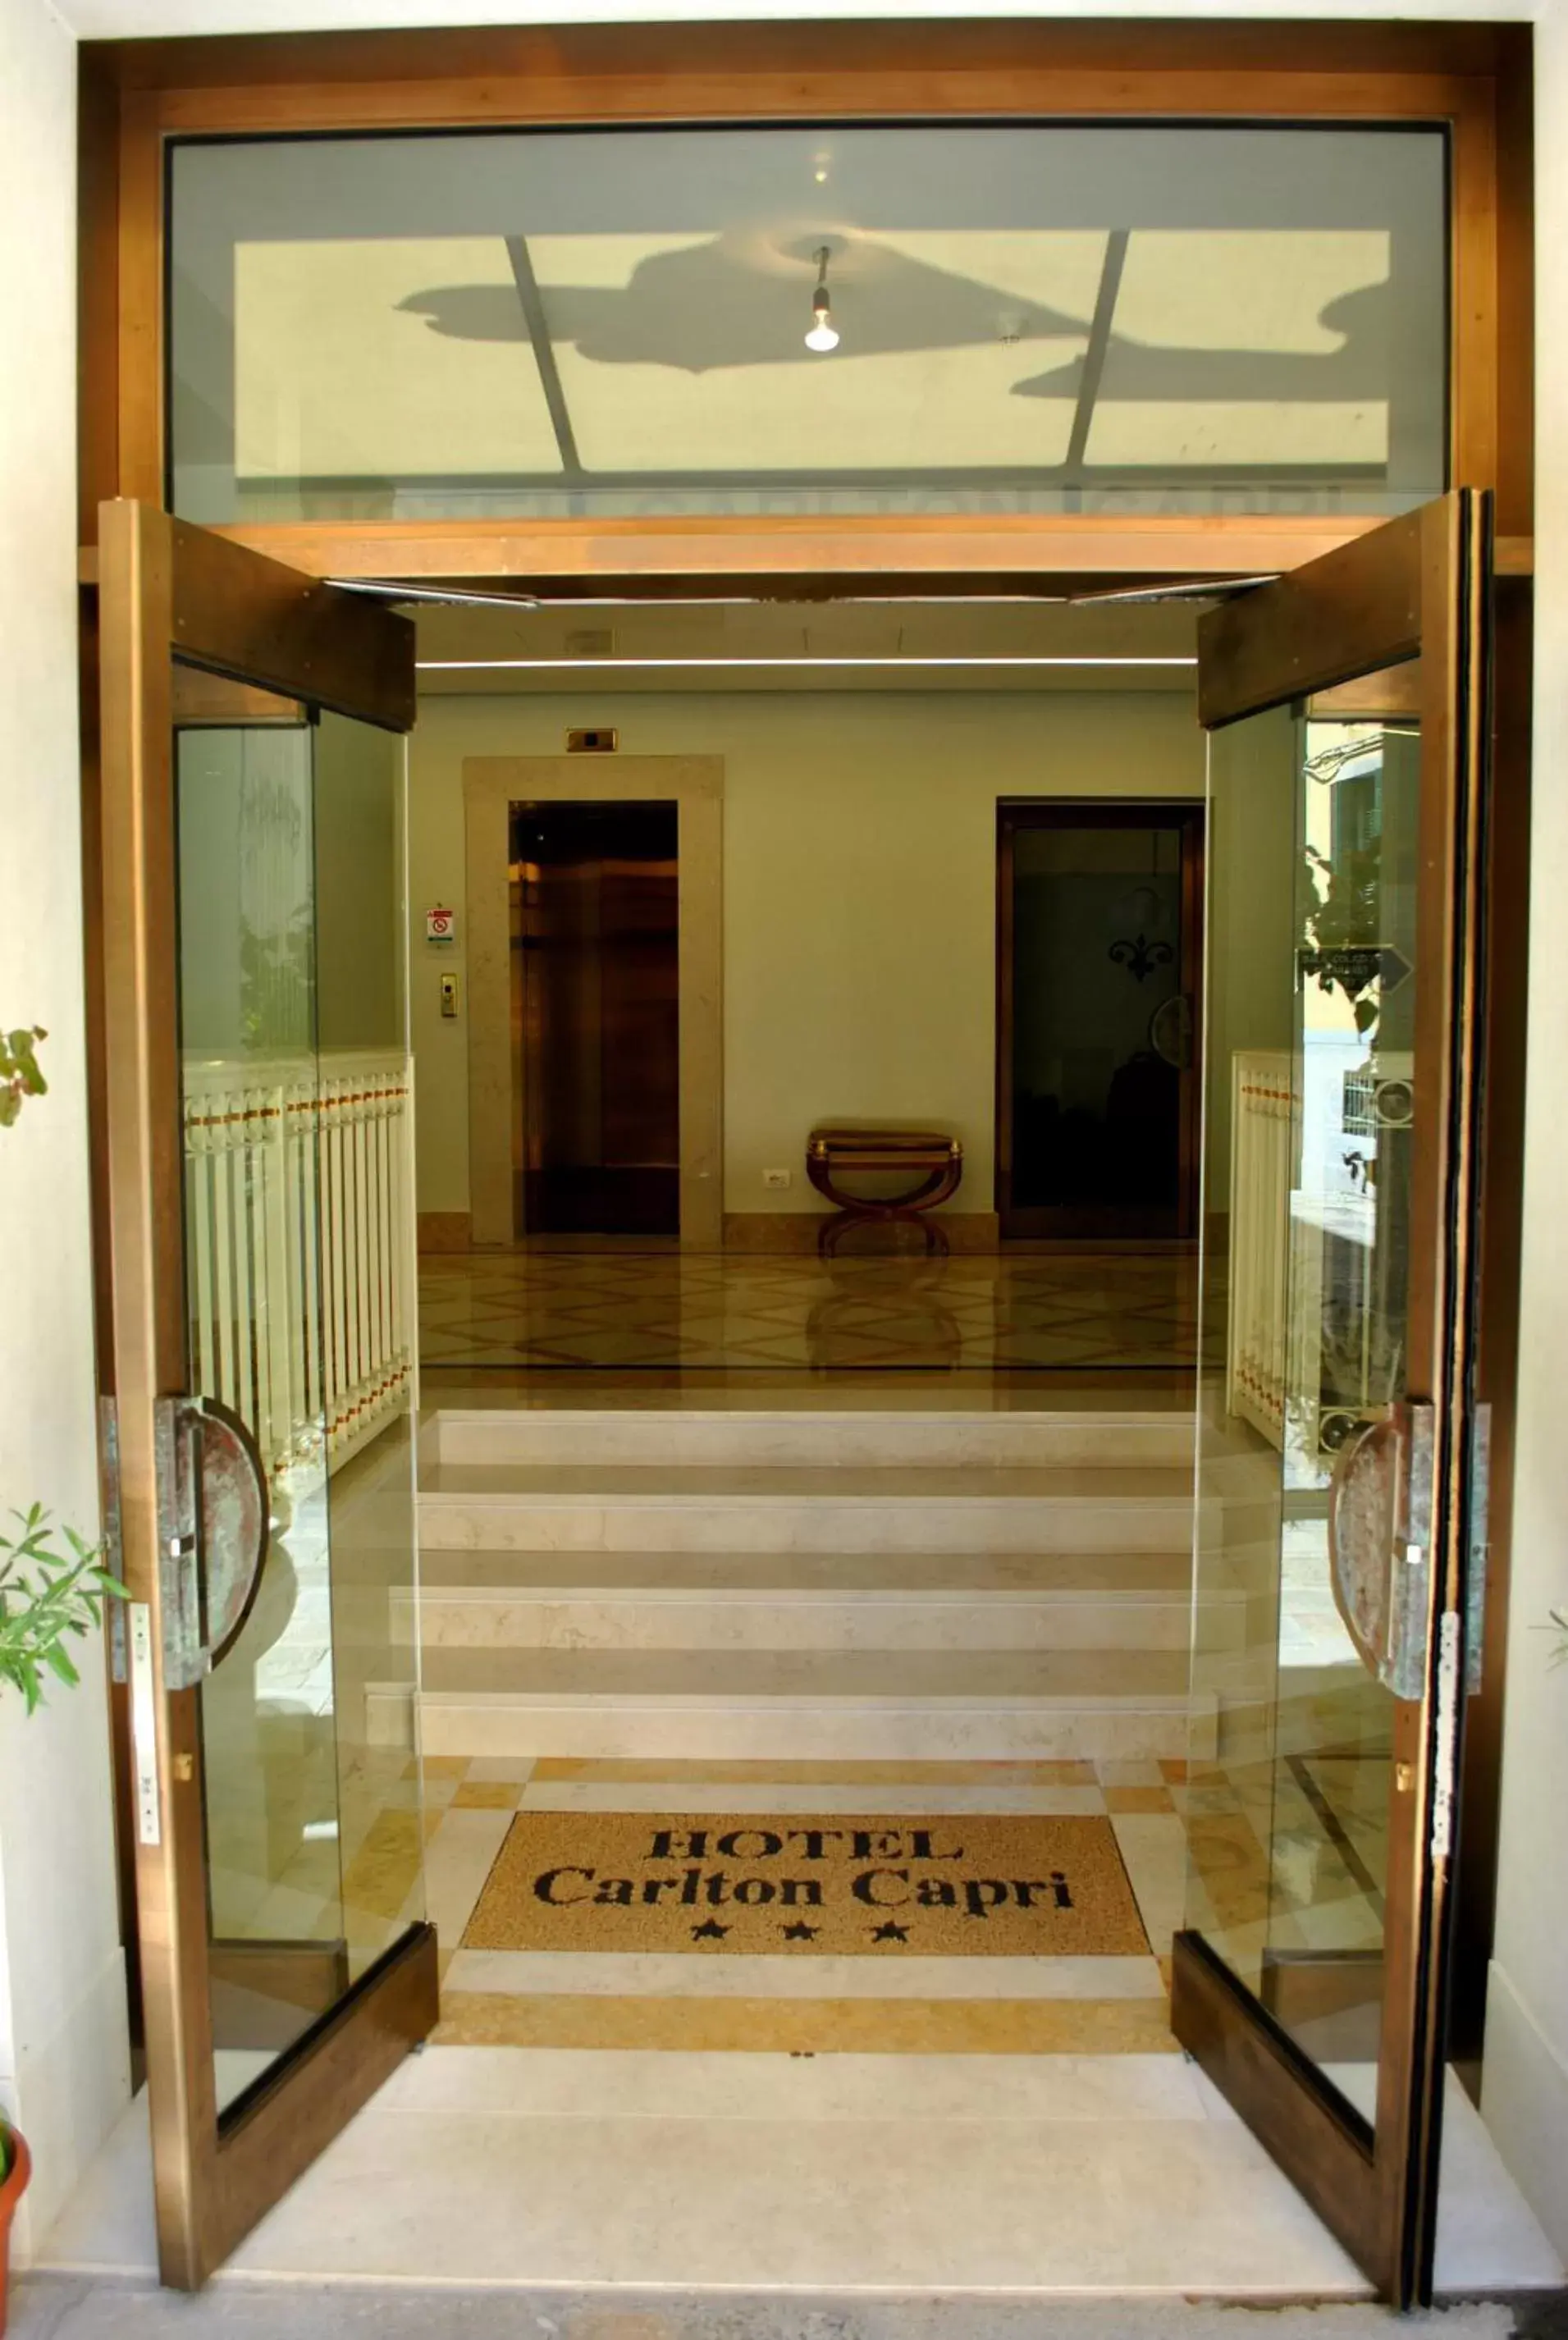 Fitness centre/facilities in Hotel Carlton Capri